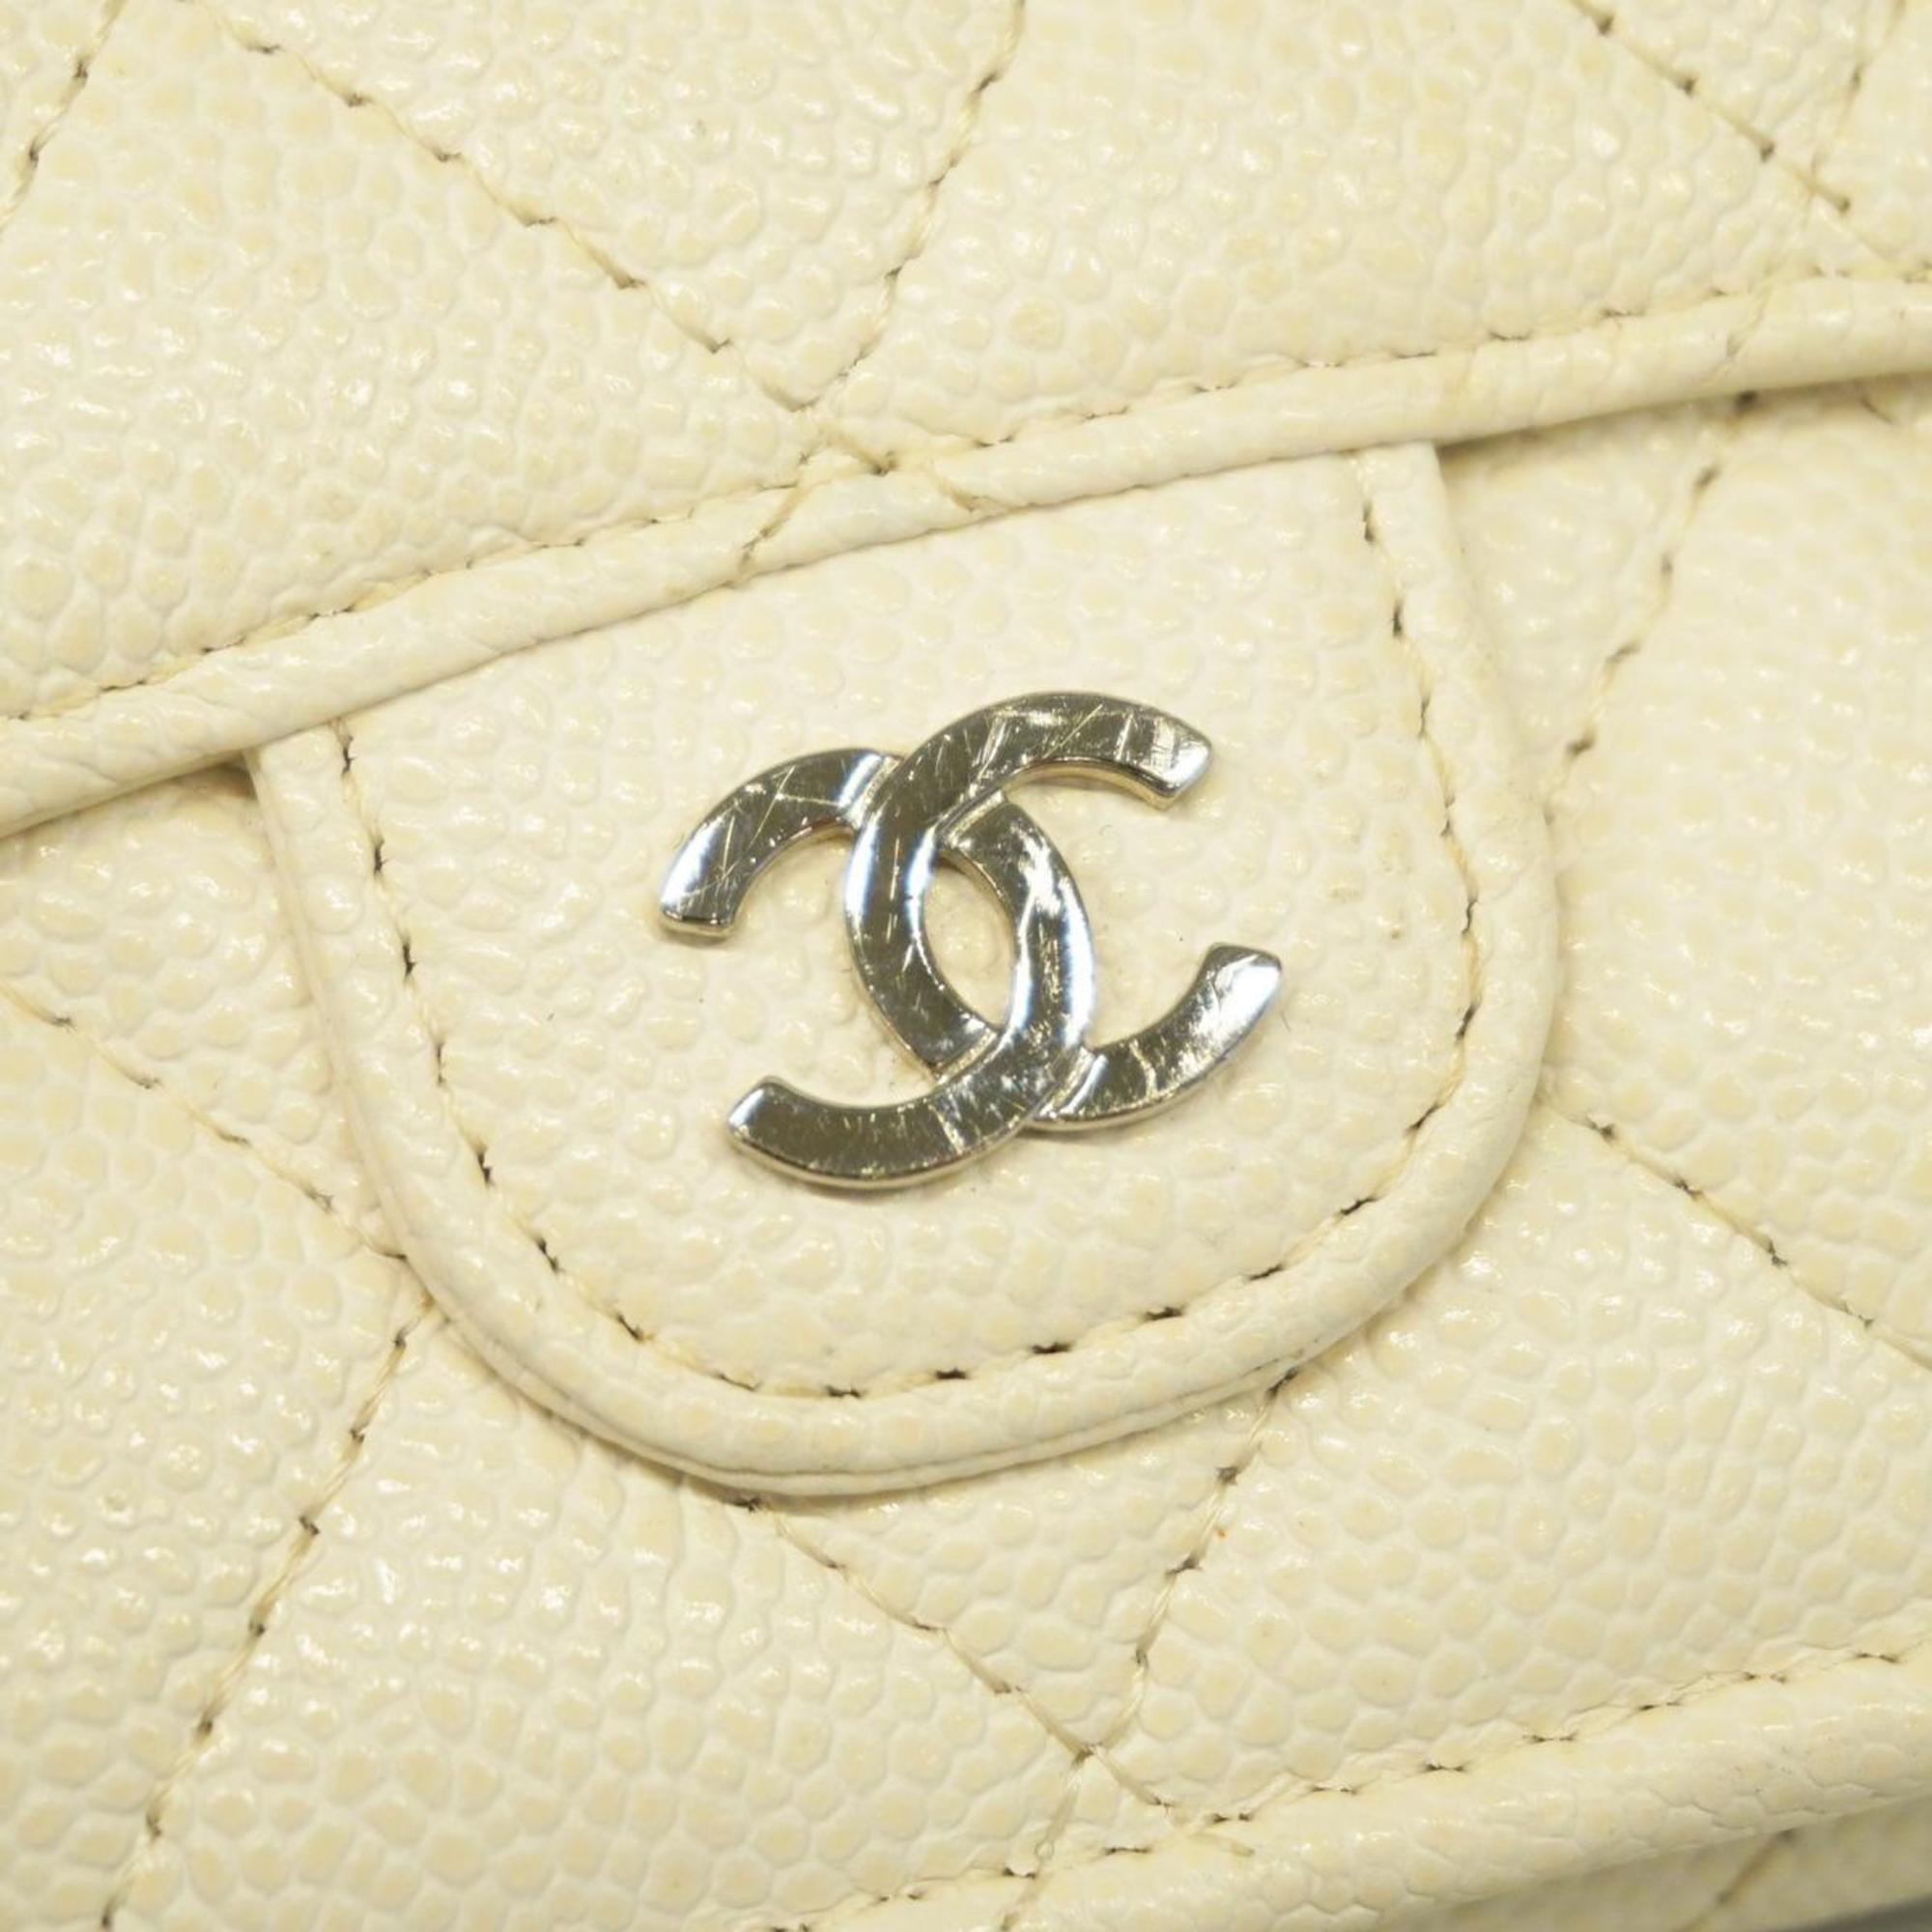 シャネル(Chanel) シャネル 三つ折り財布 マトラッセ キャビアスキン ホワイト   レディース